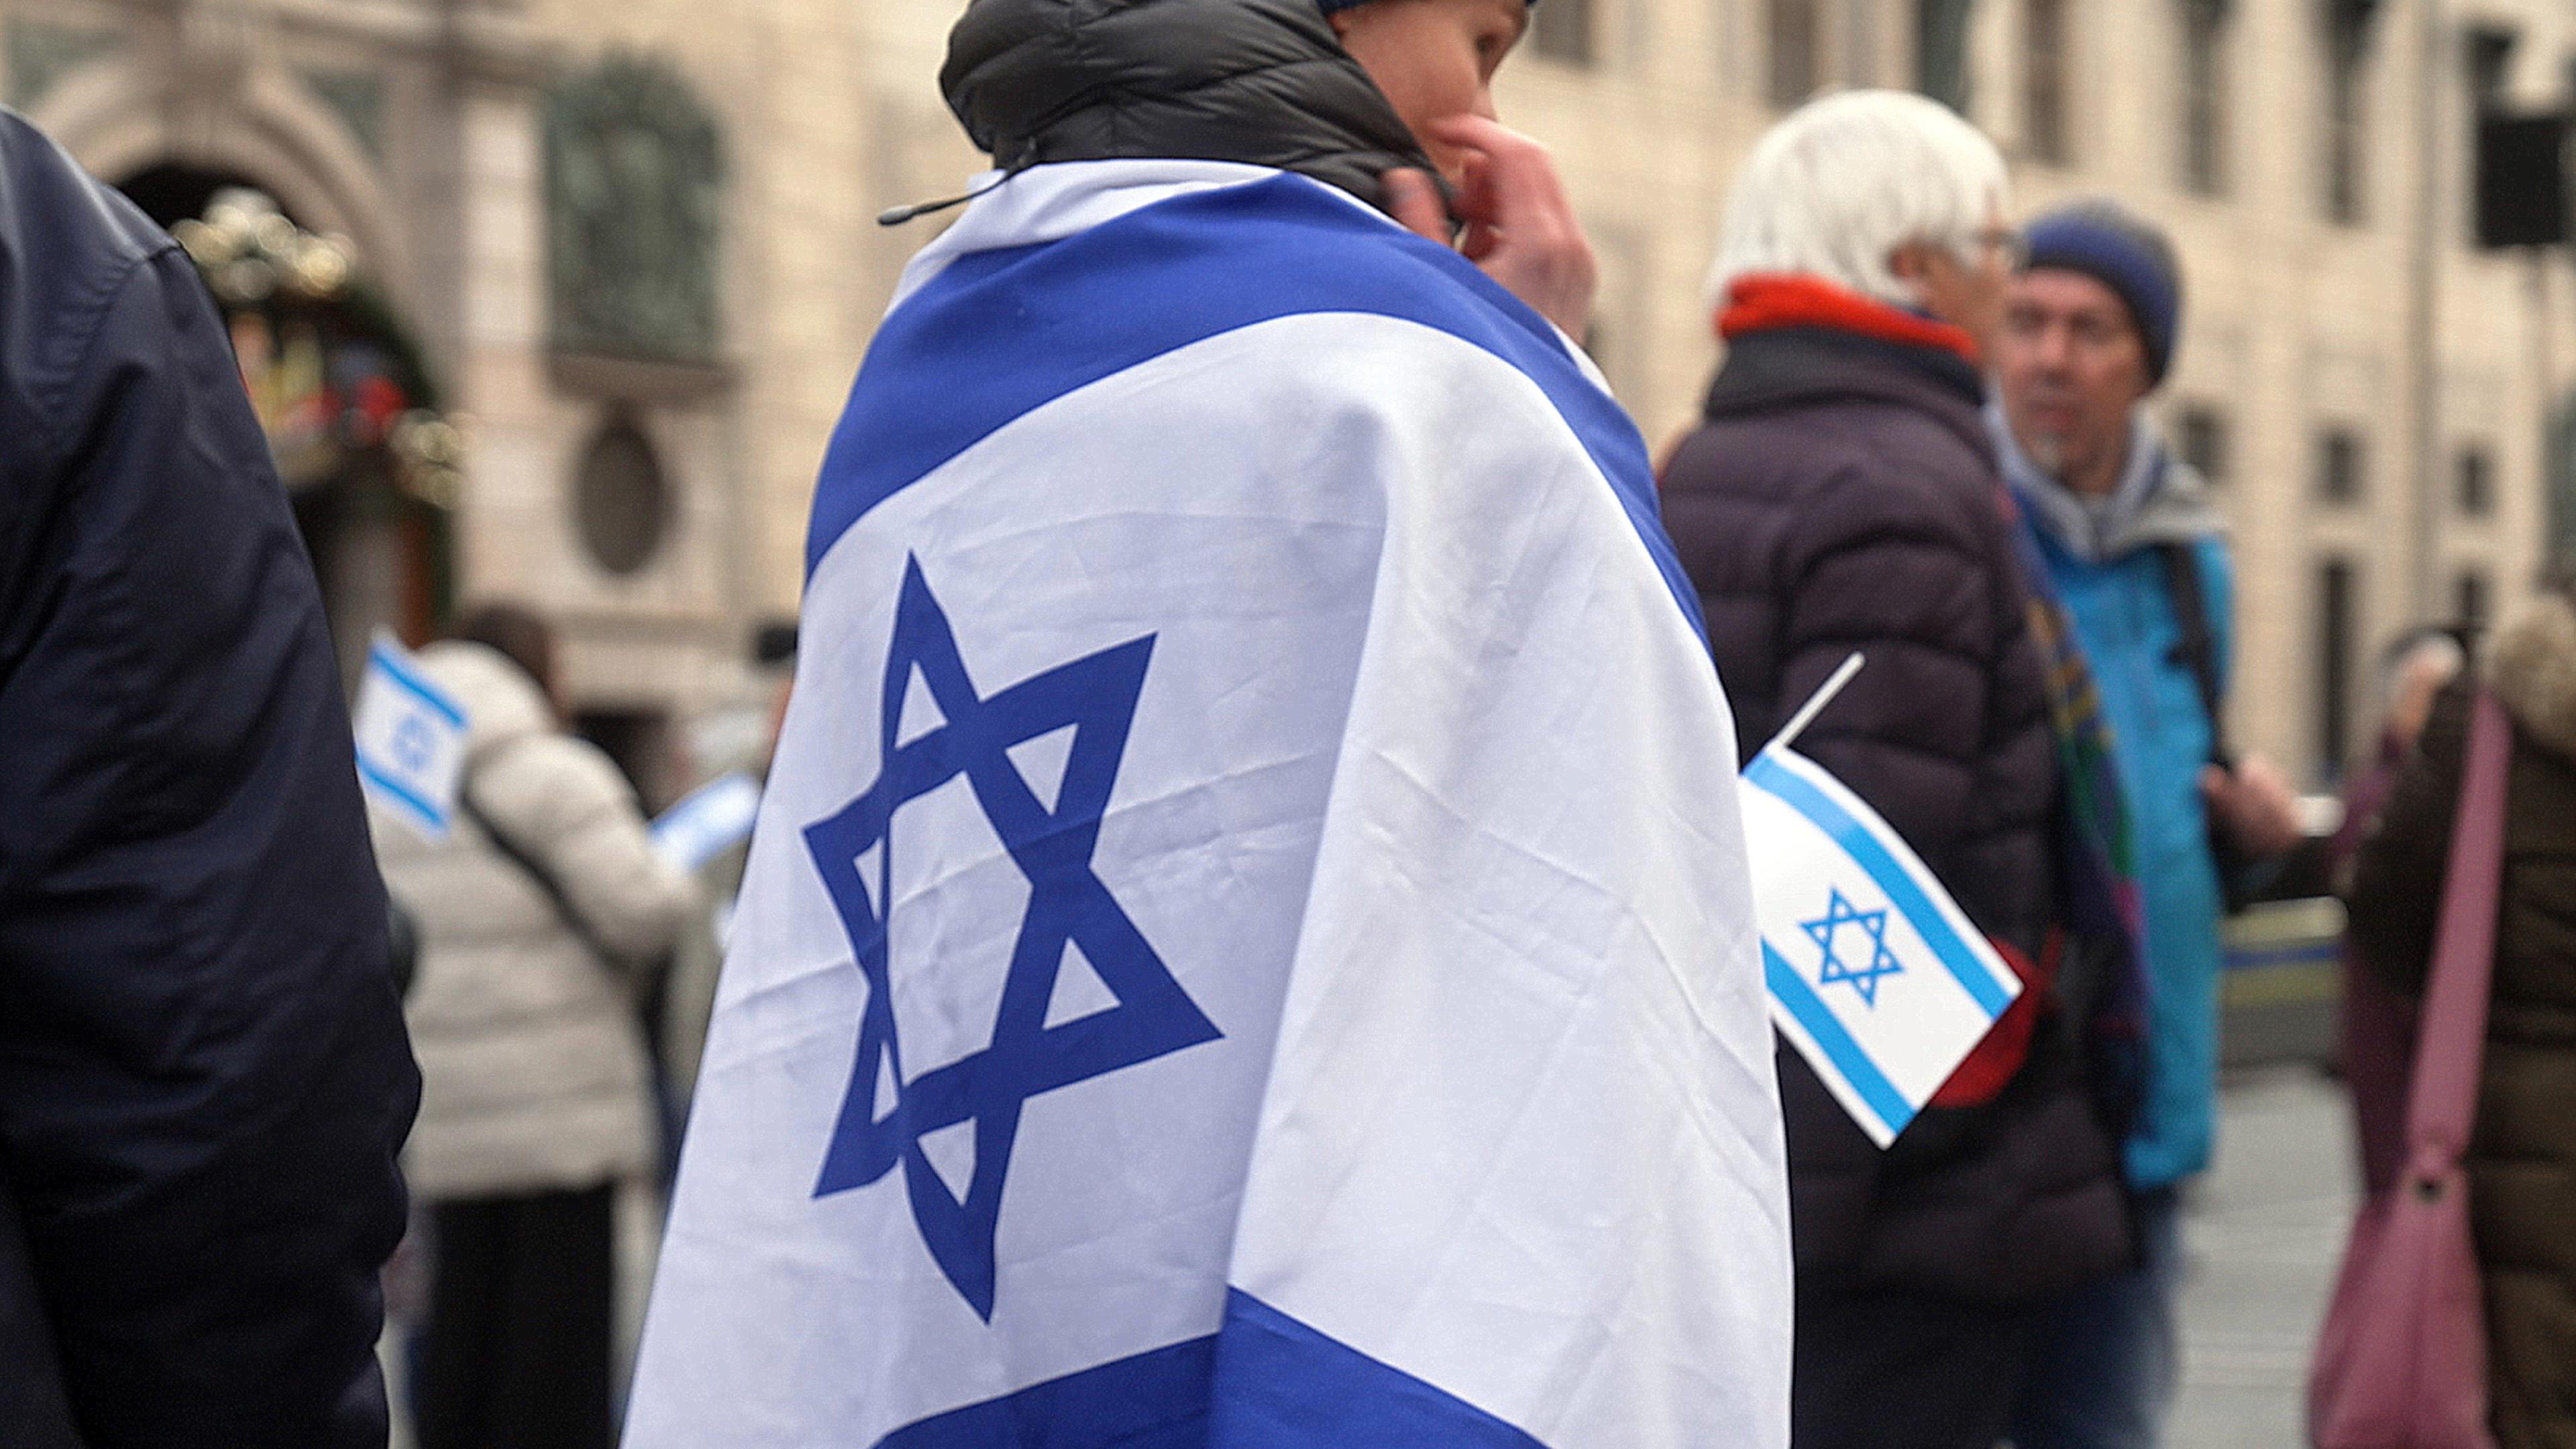 Demo. Frau von hinten in Israel-Flagge gehüllt. Im Hintergrund unscharf weitere Demo-Teilnehmer.